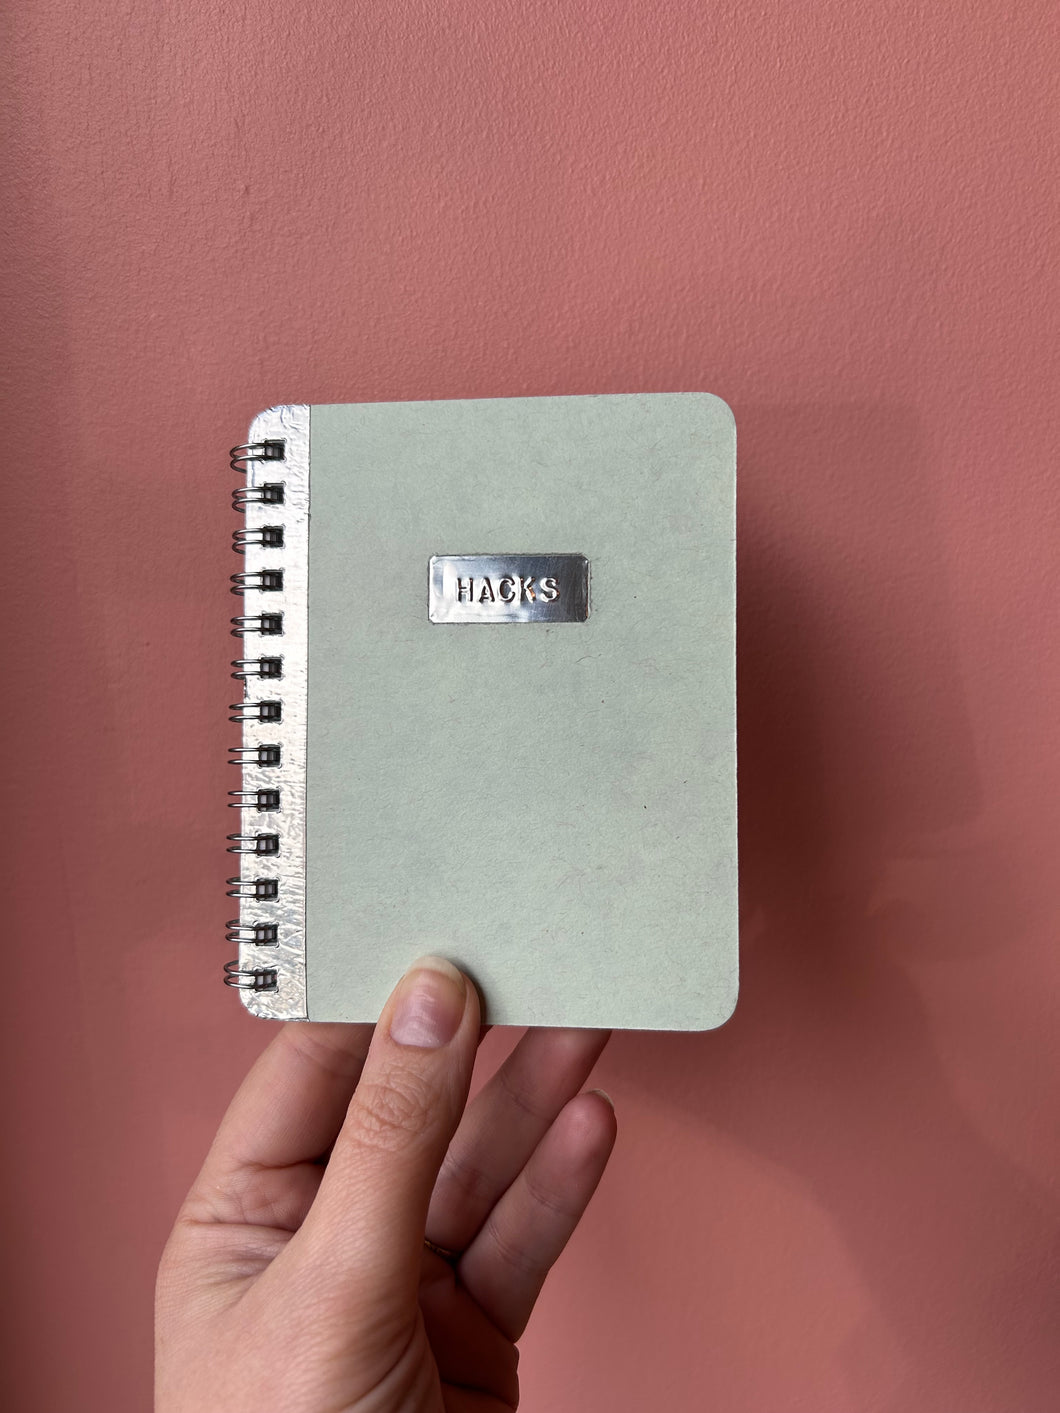 HACKS - handmade rescued notebook